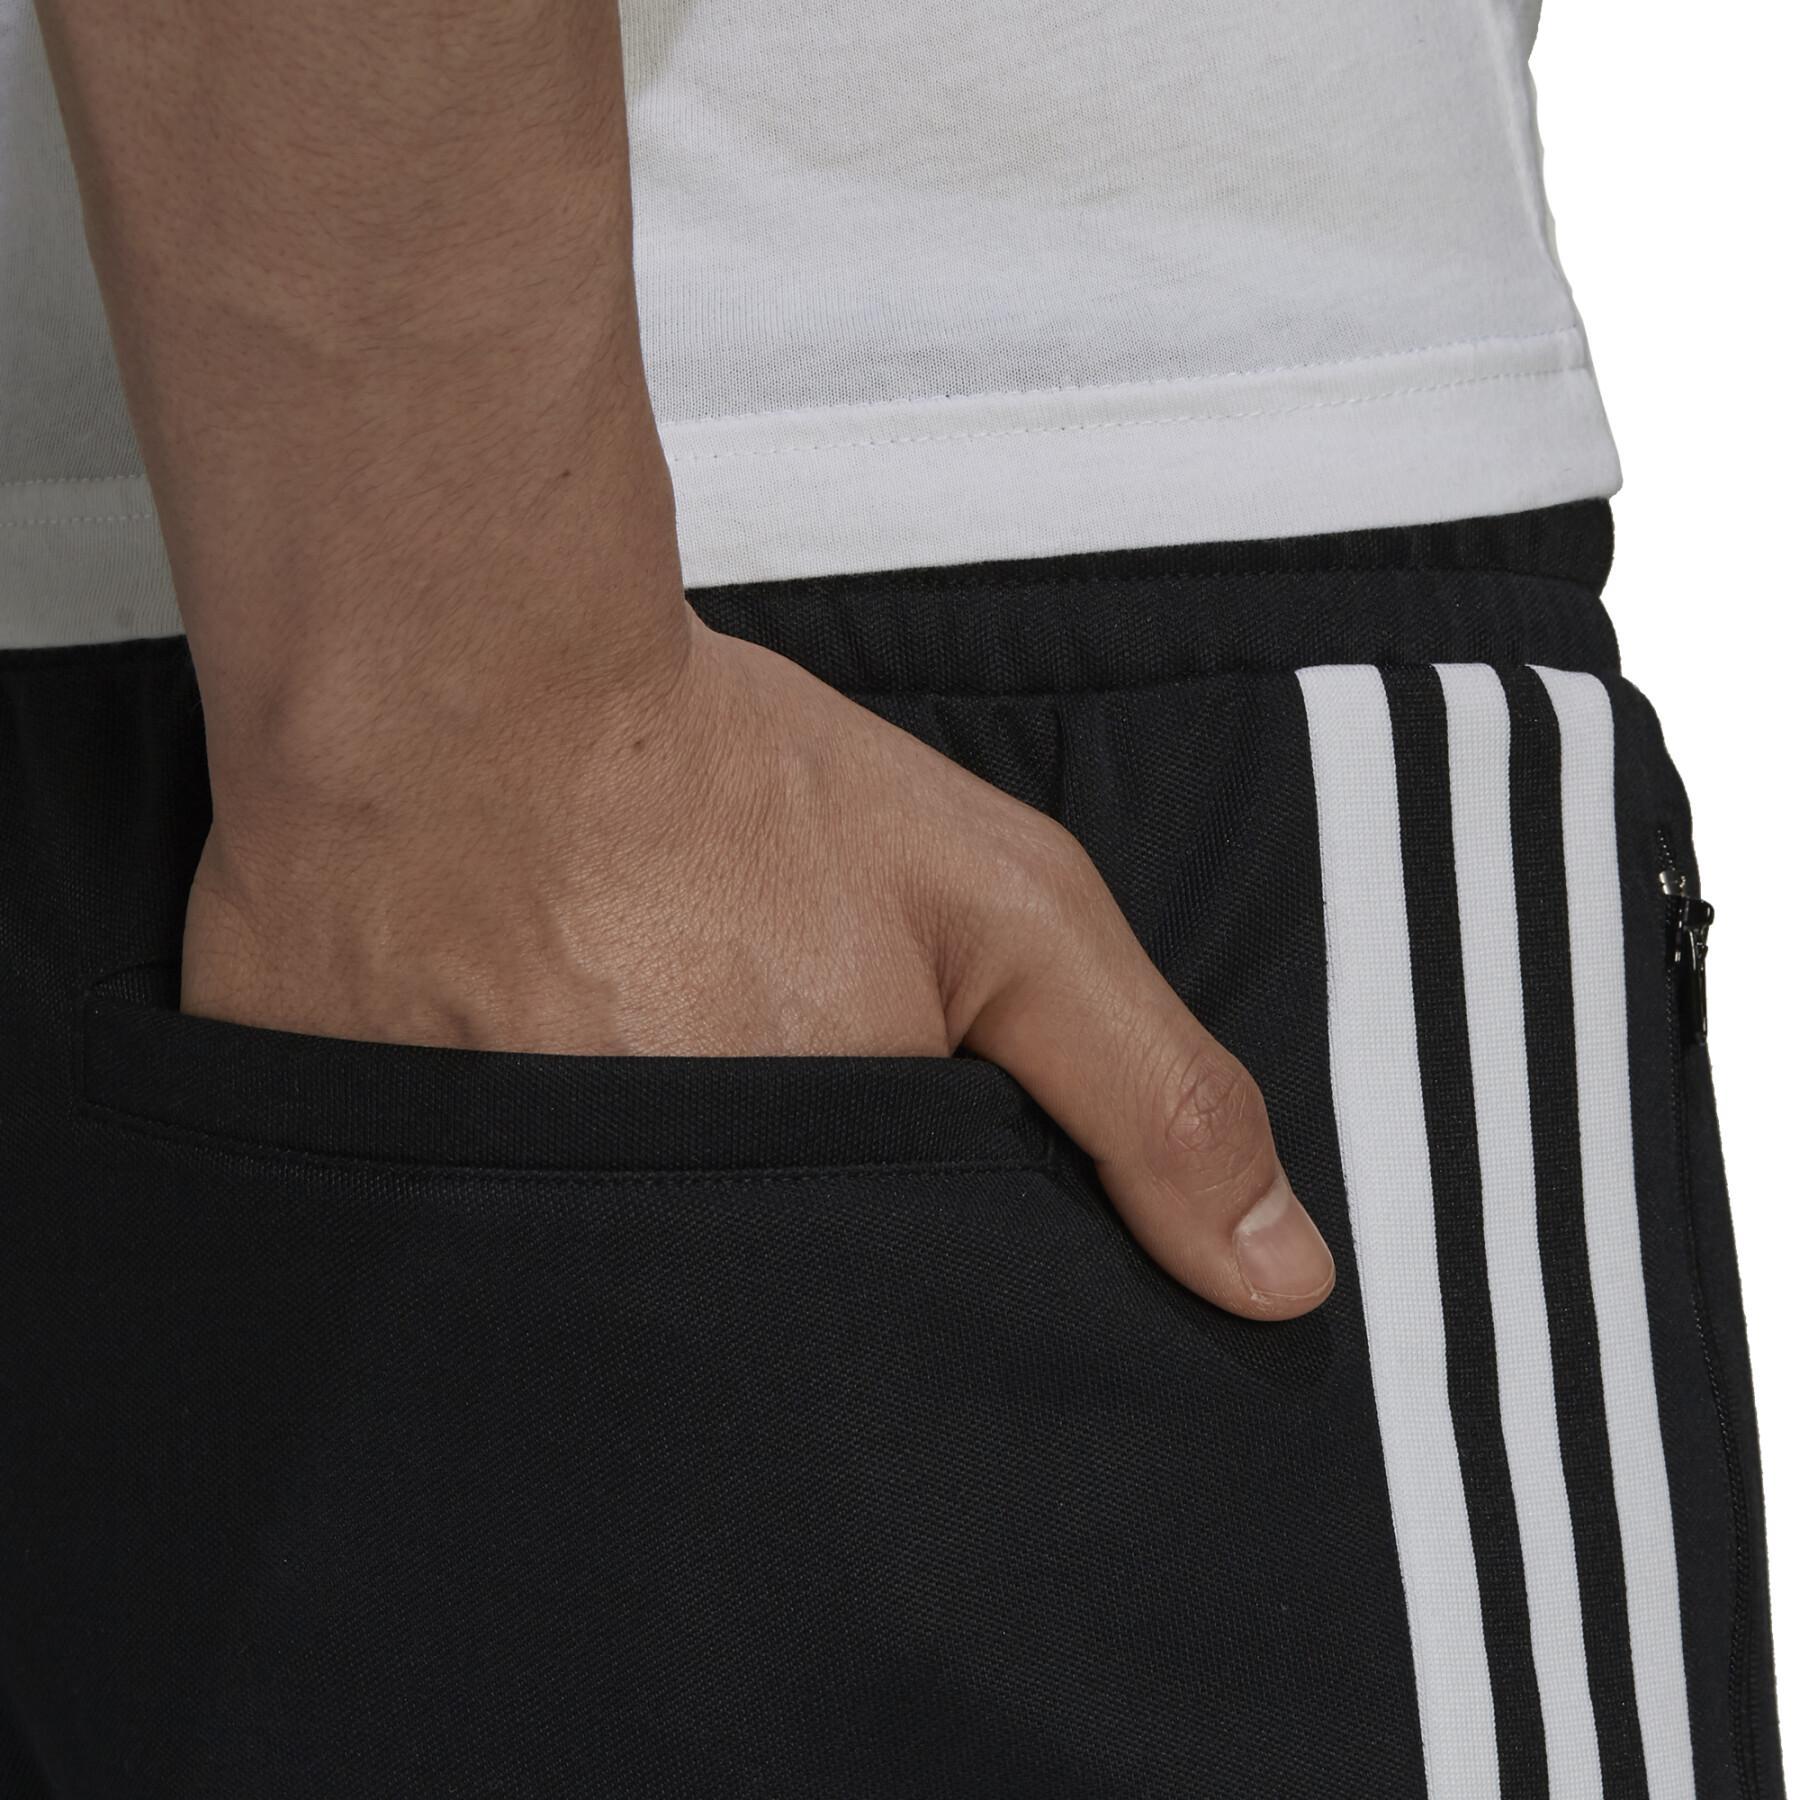 Pantalon de adidas Originals Adicolor s Beckenbauer